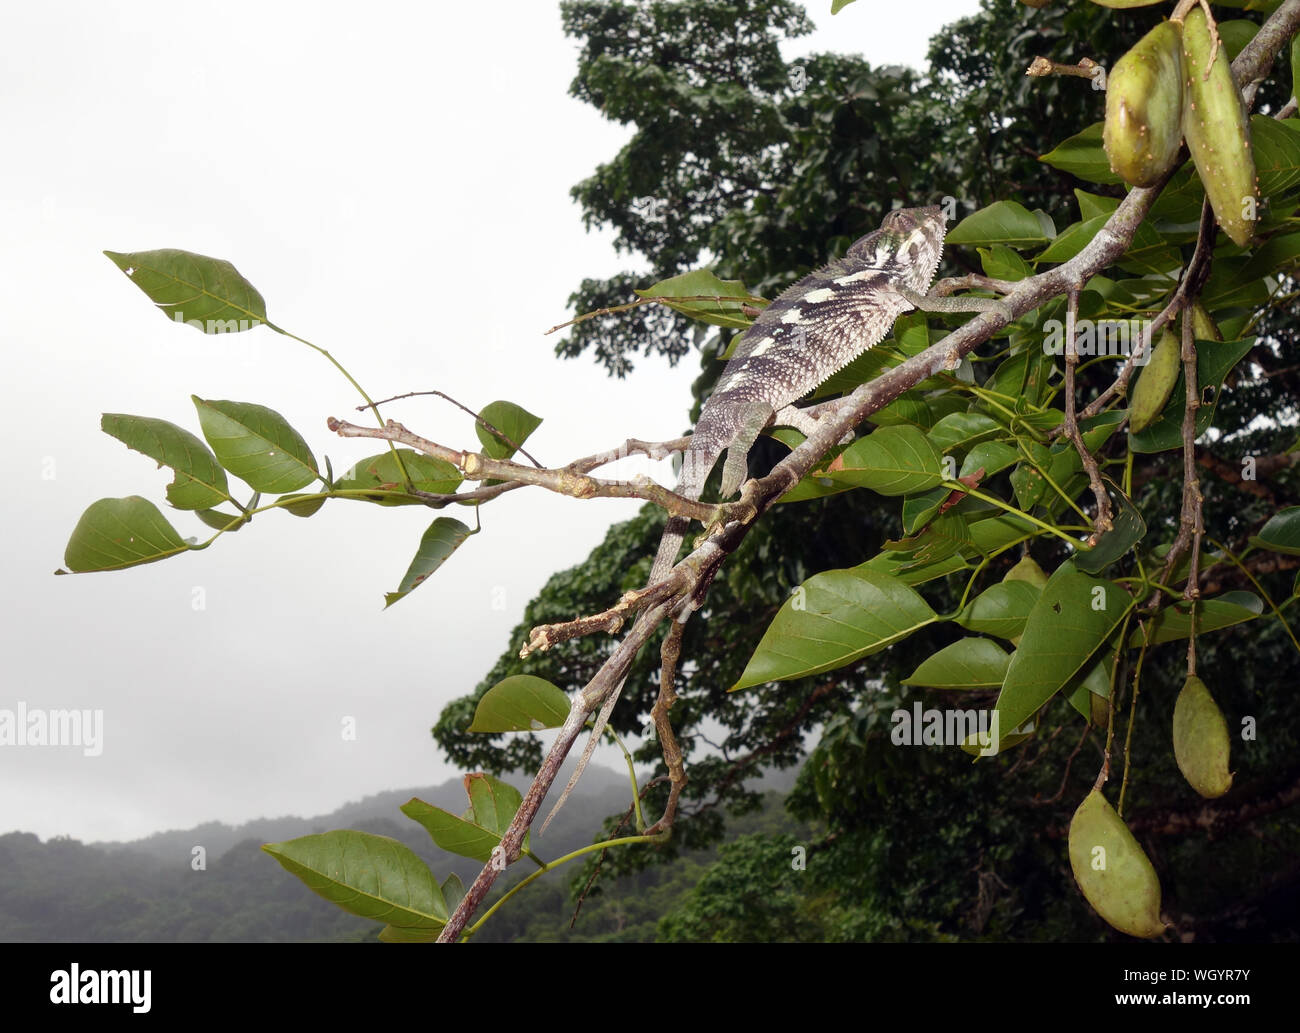 Panther chameleon sul ramo, Nosy mangabe, Parco Nazionale Masoala, Madagascar Foto Stock